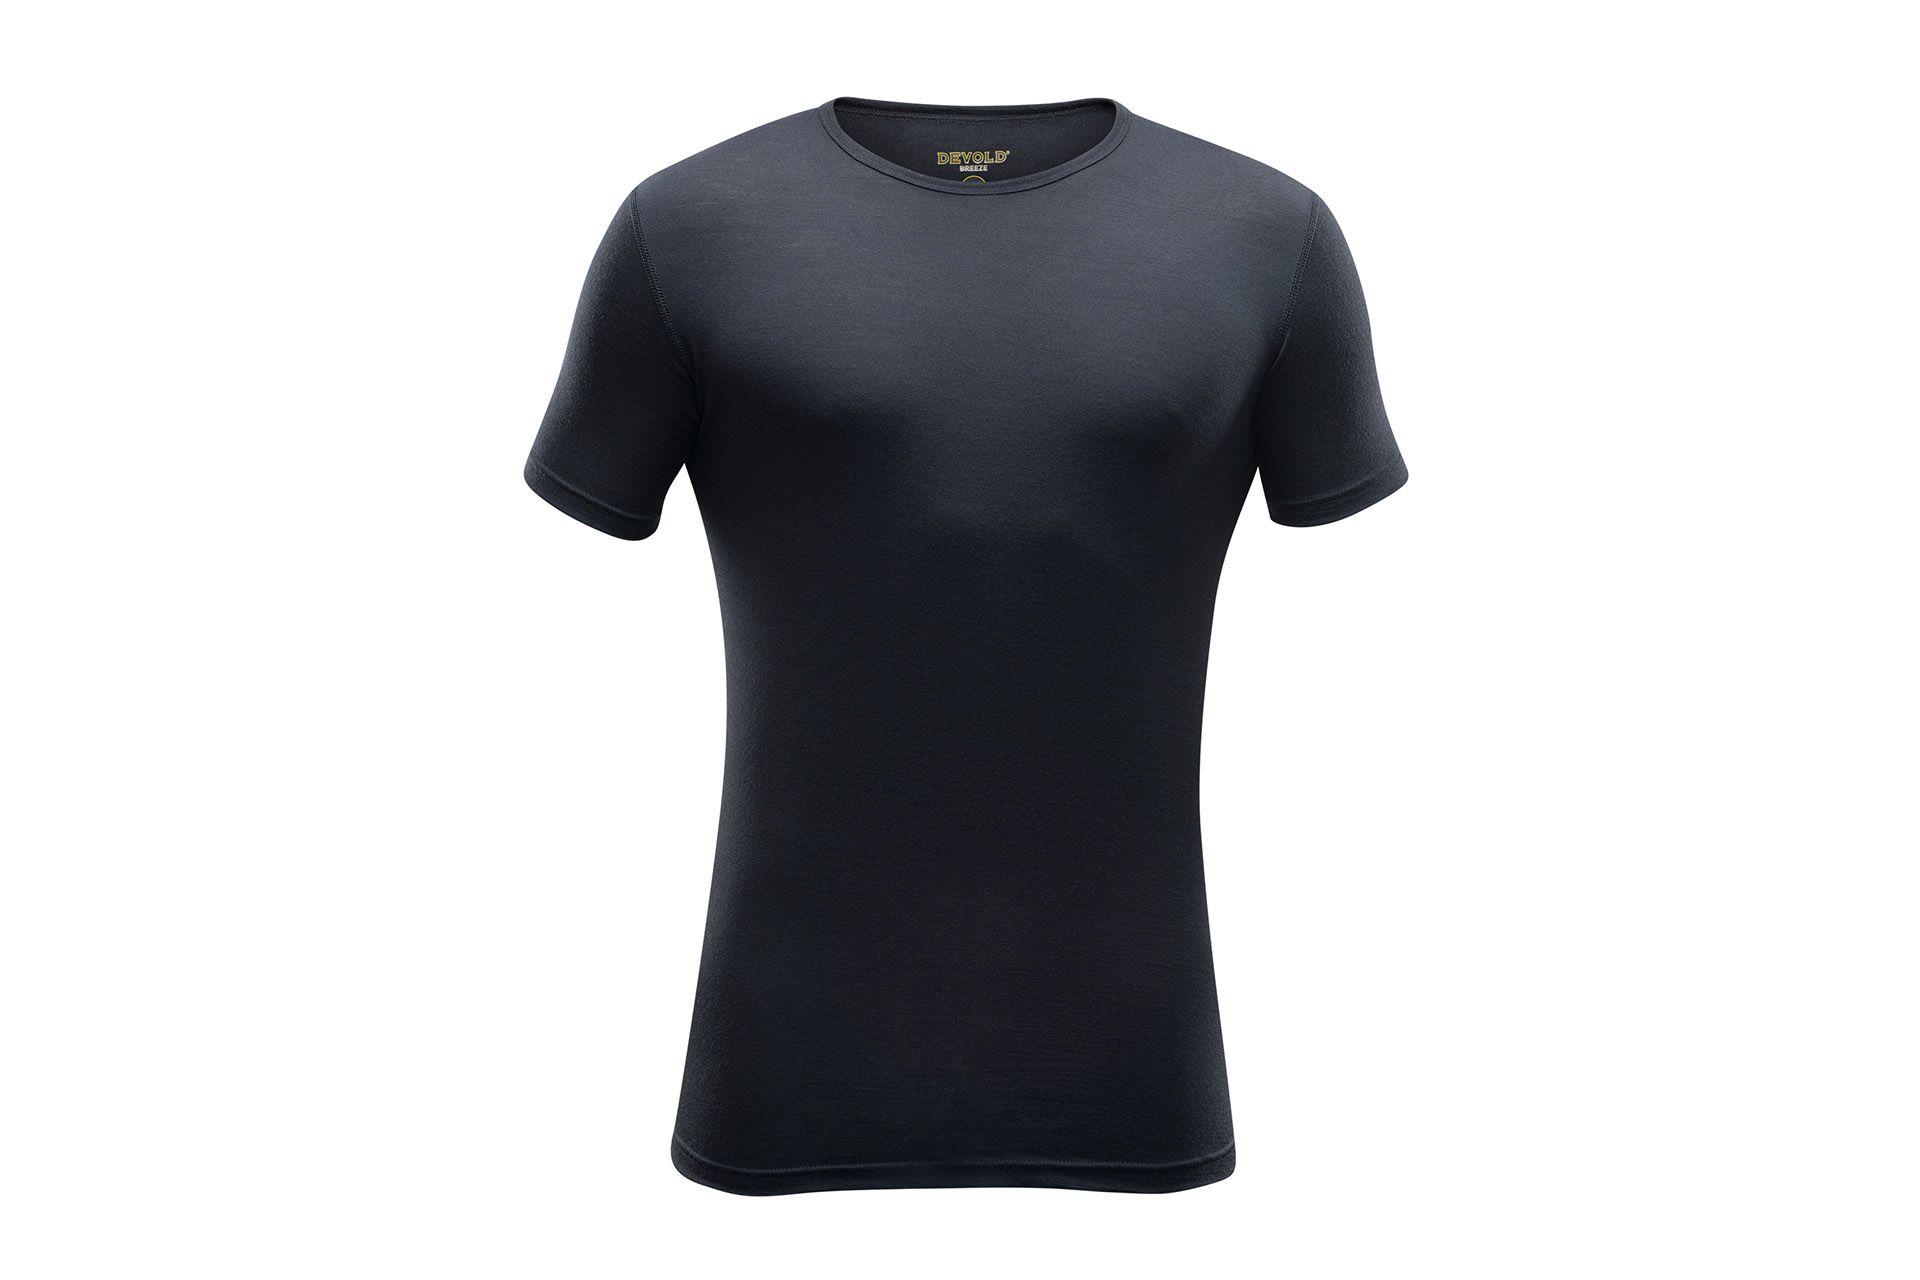 DEVOLD Breeze Man, Modell "T-Shirt" Black